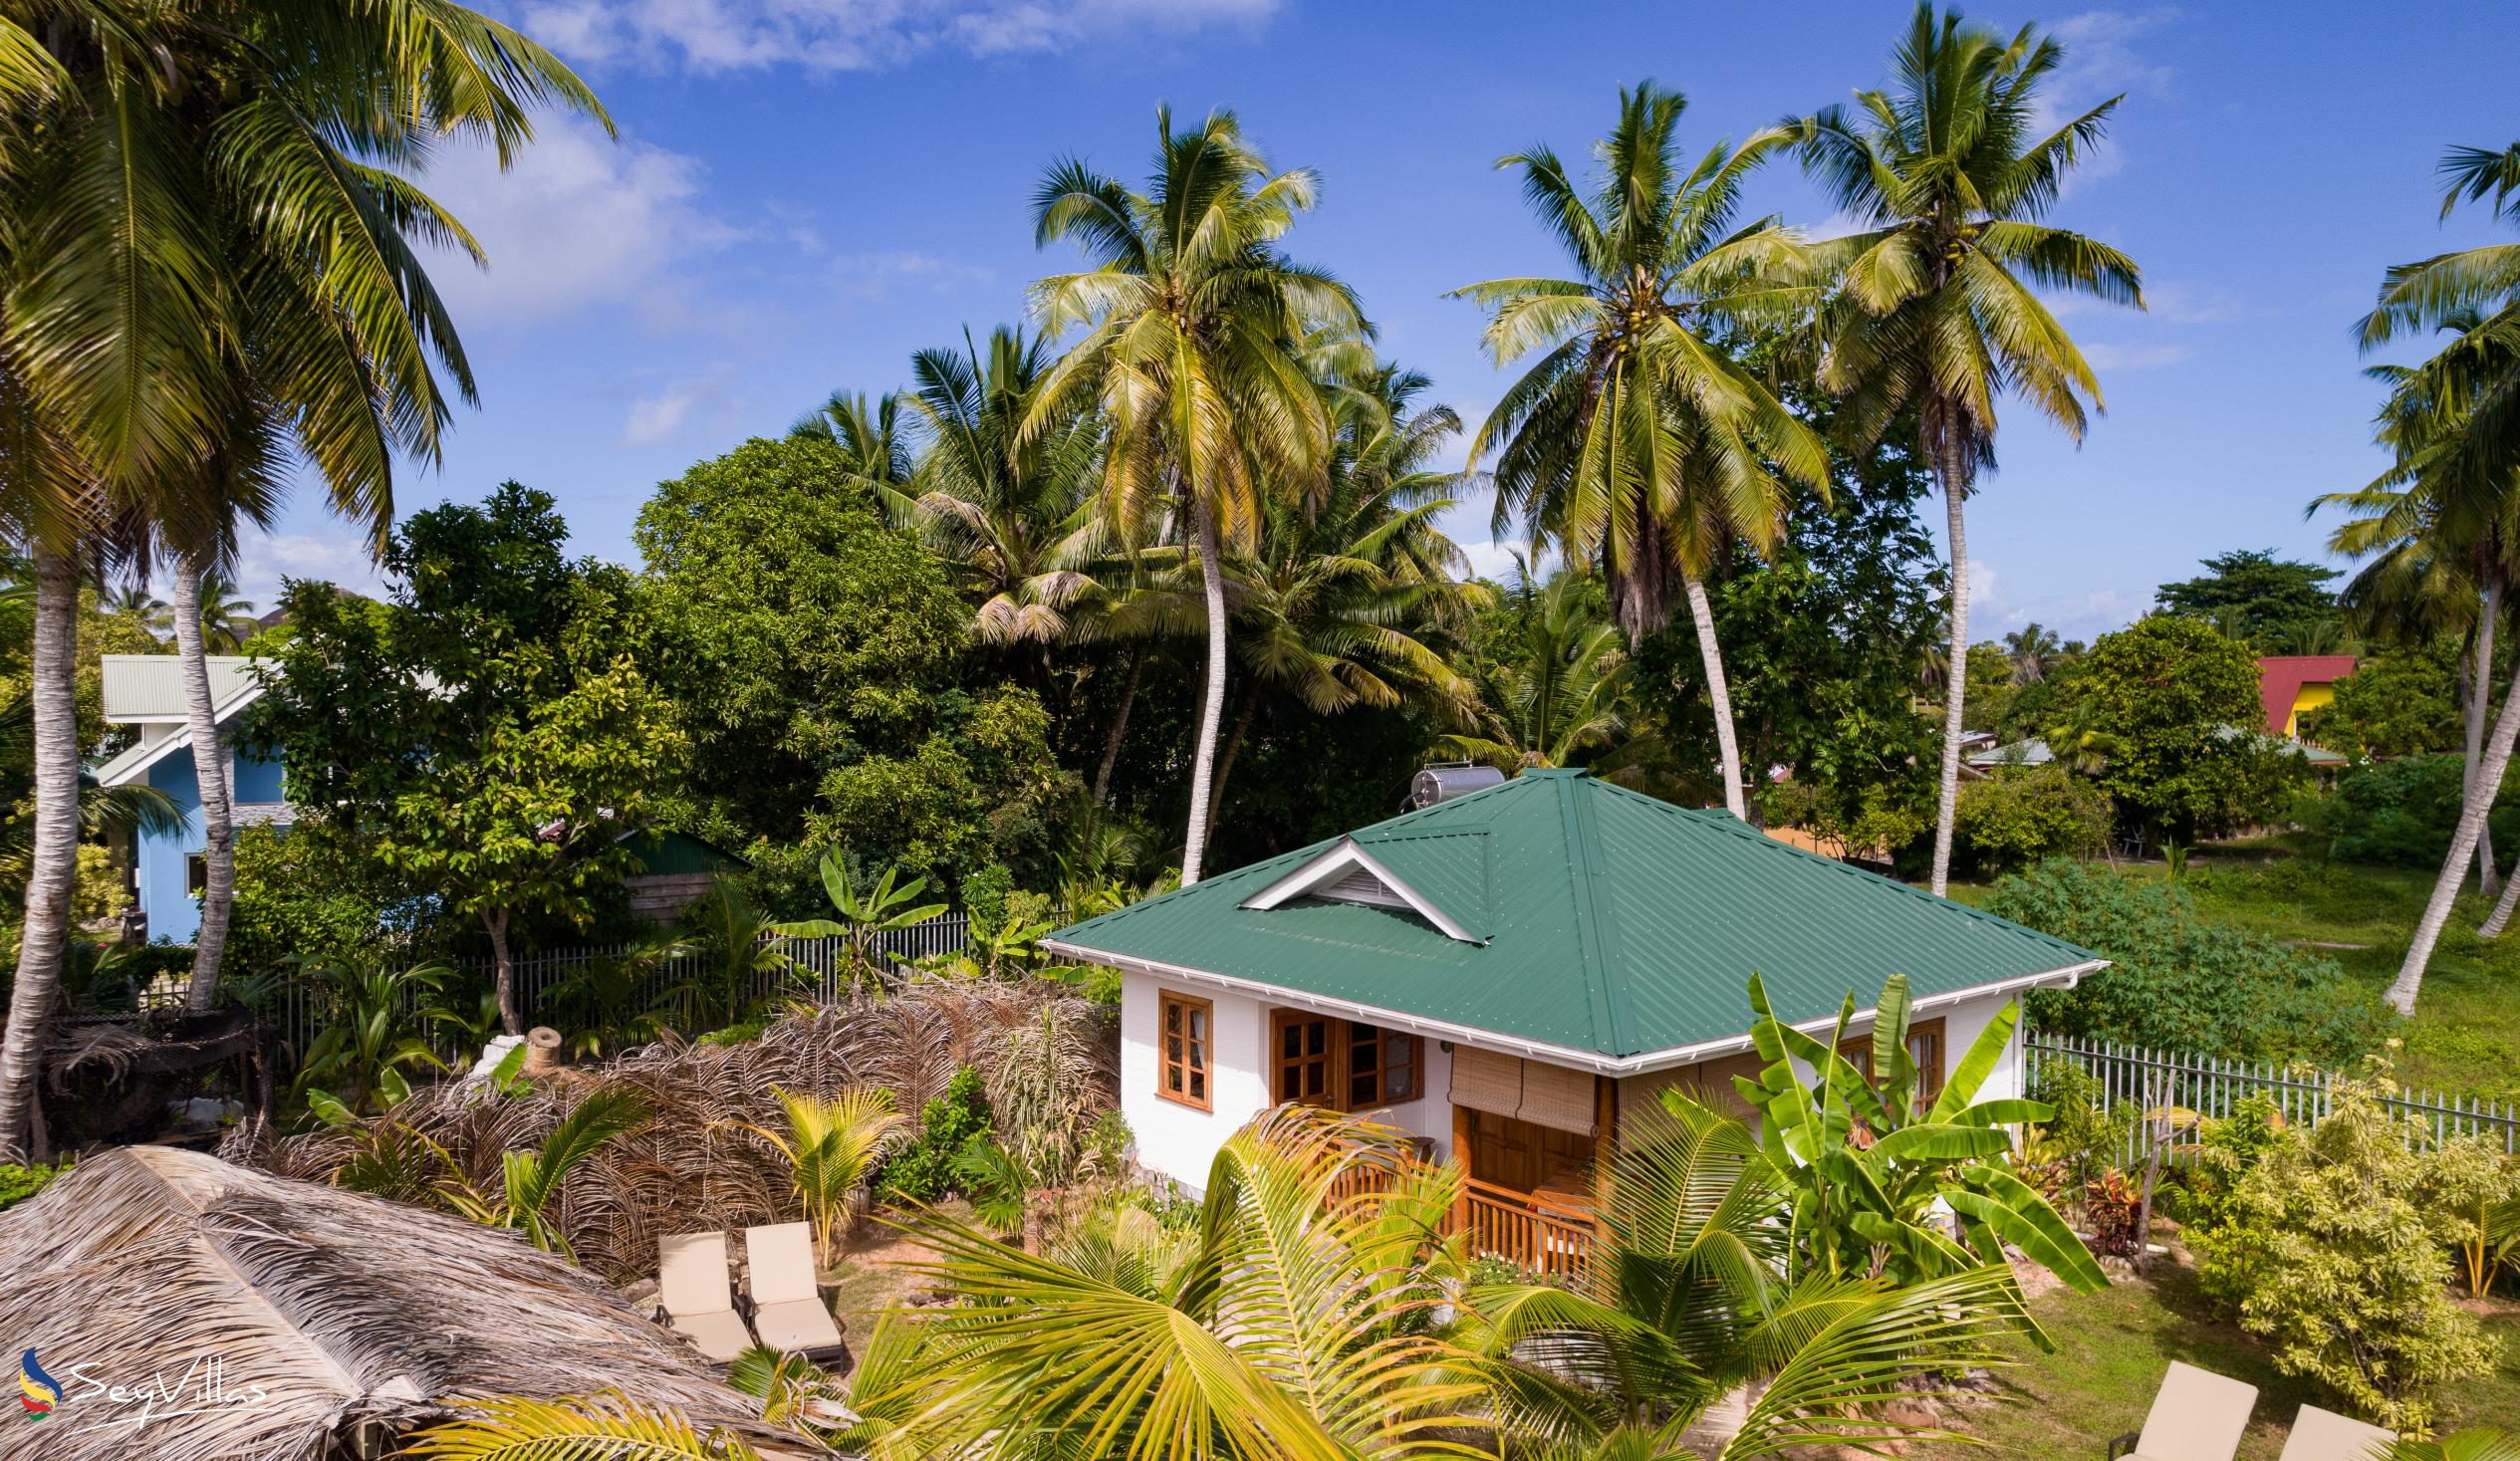 Photo 2: Coco de Mahi - Outdoor area - La Digue (Seychelles)